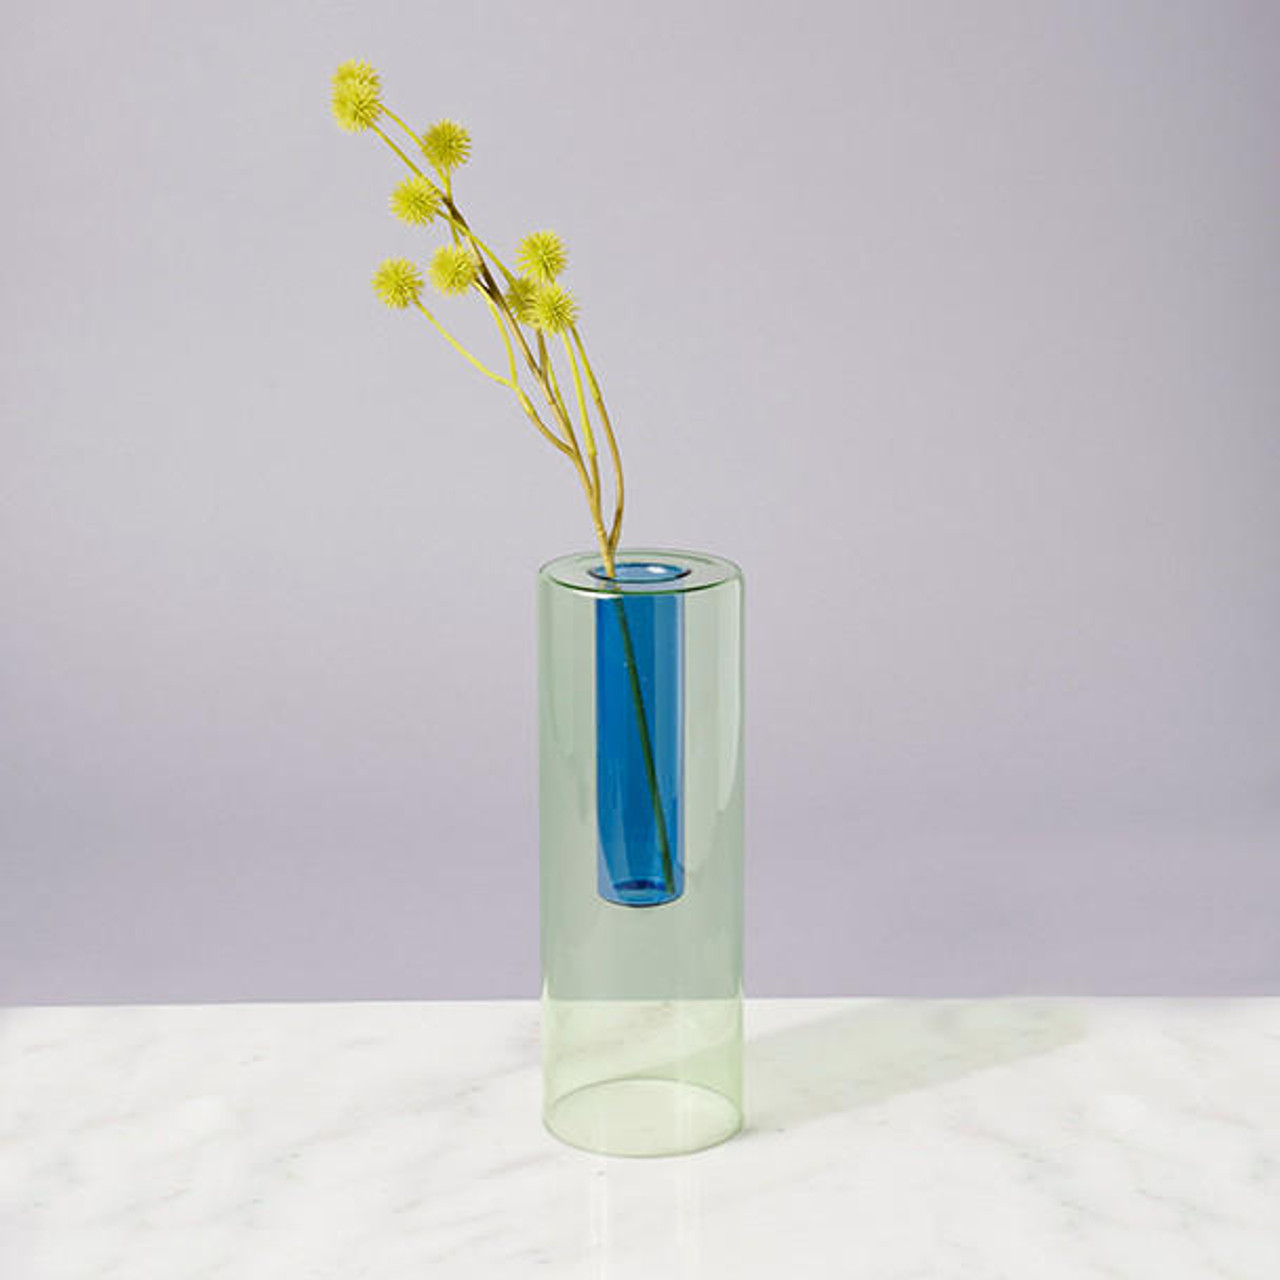 Glass Vases: Short Glass Vessels & Long Glass Vases